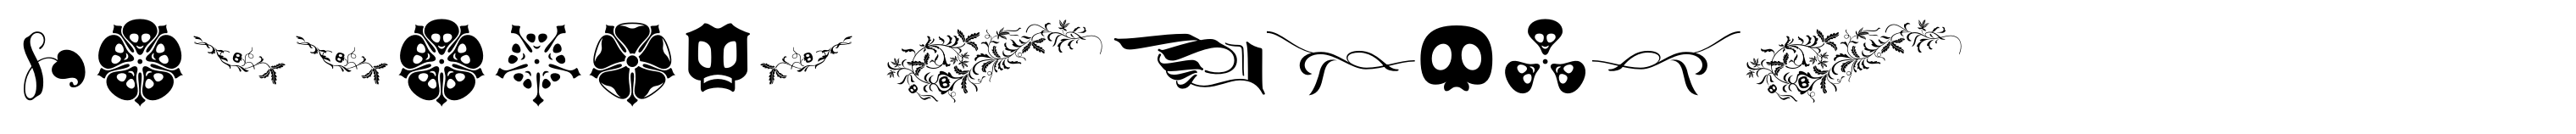 Wittingau Symbols